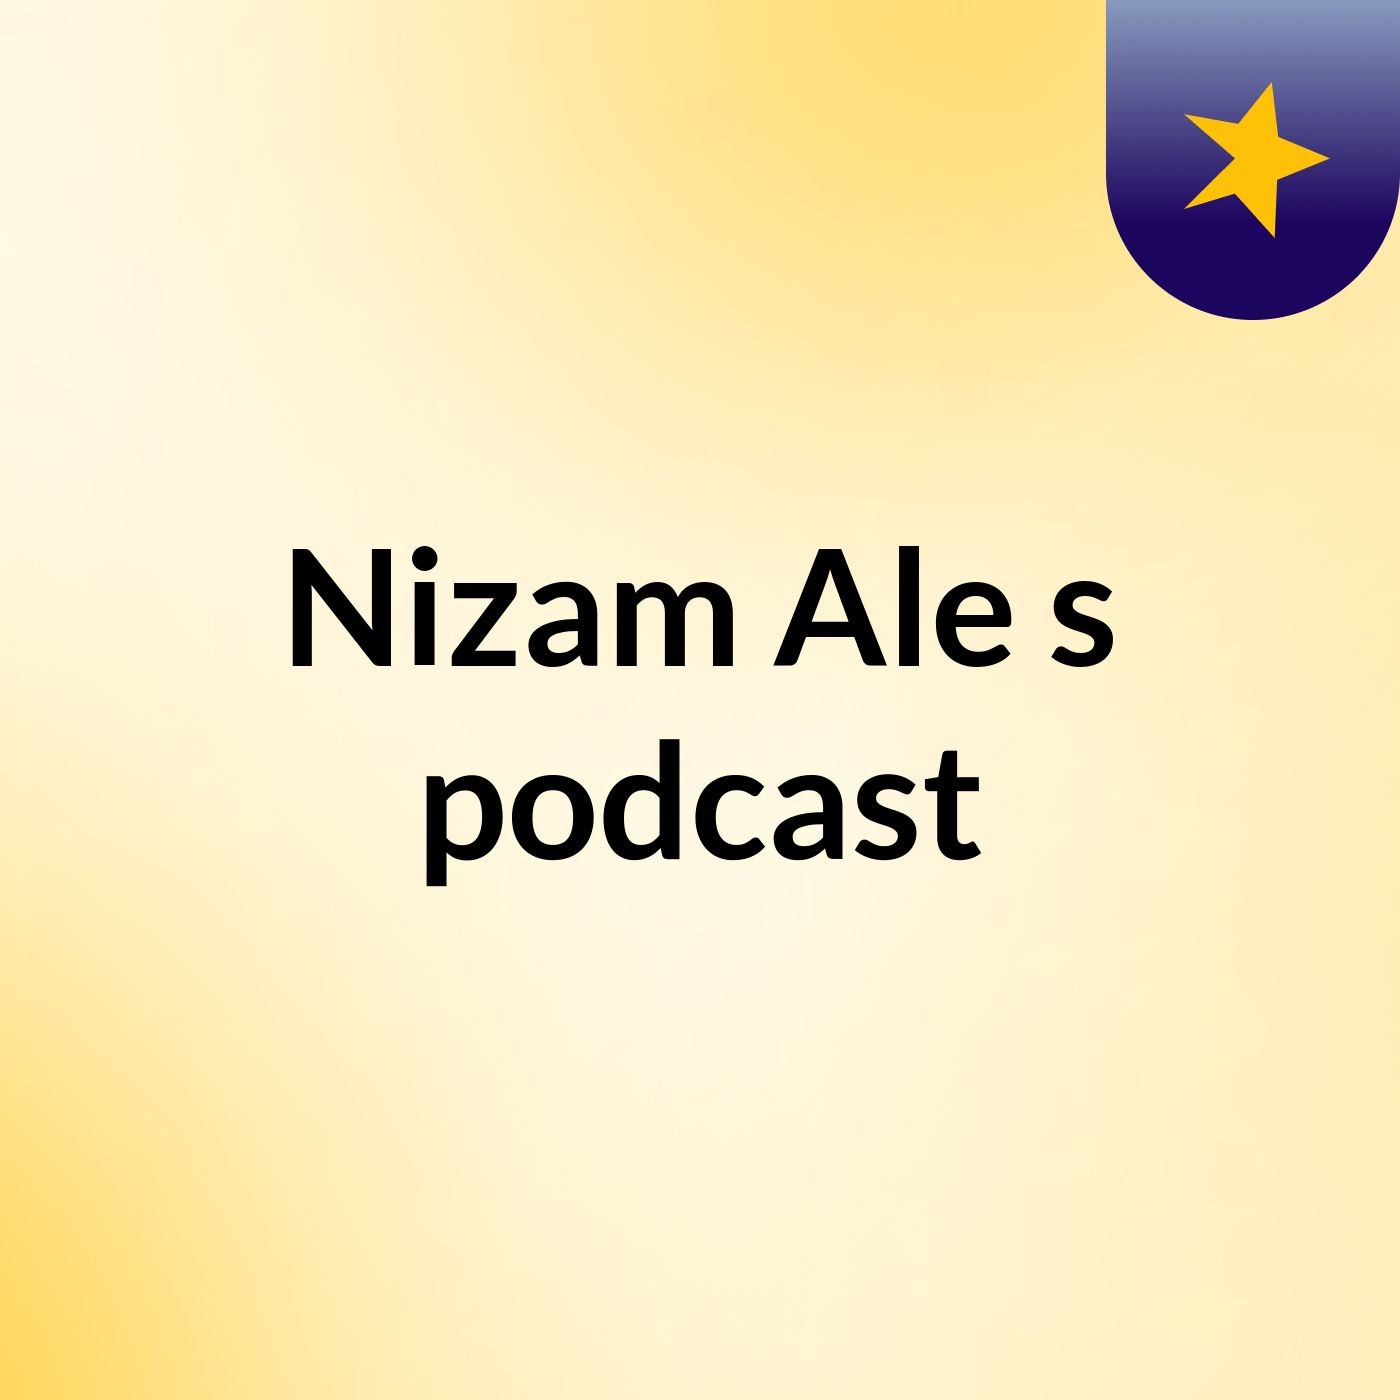 Nizam Ale's podcast